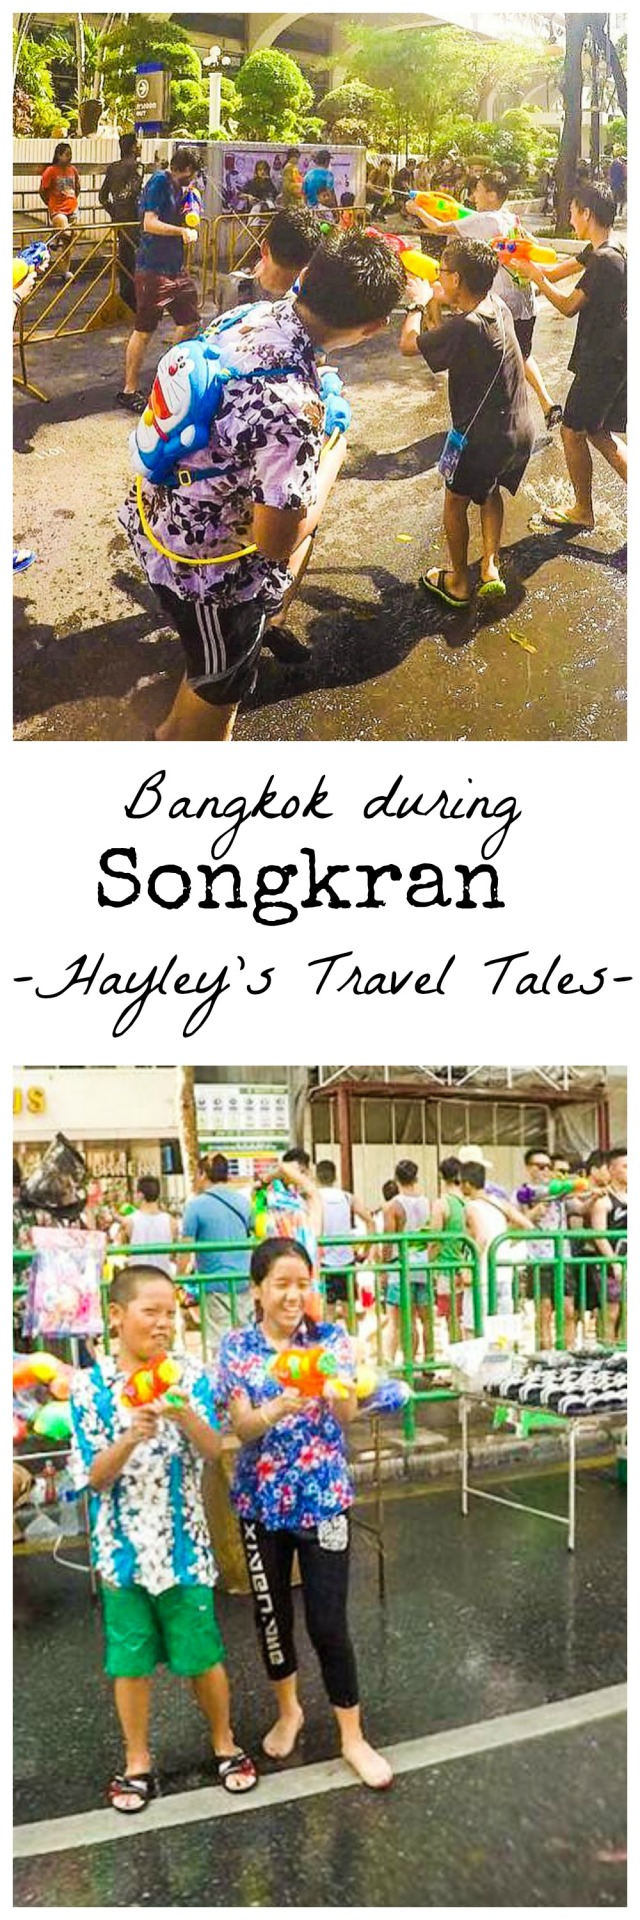 bangkok during songkran